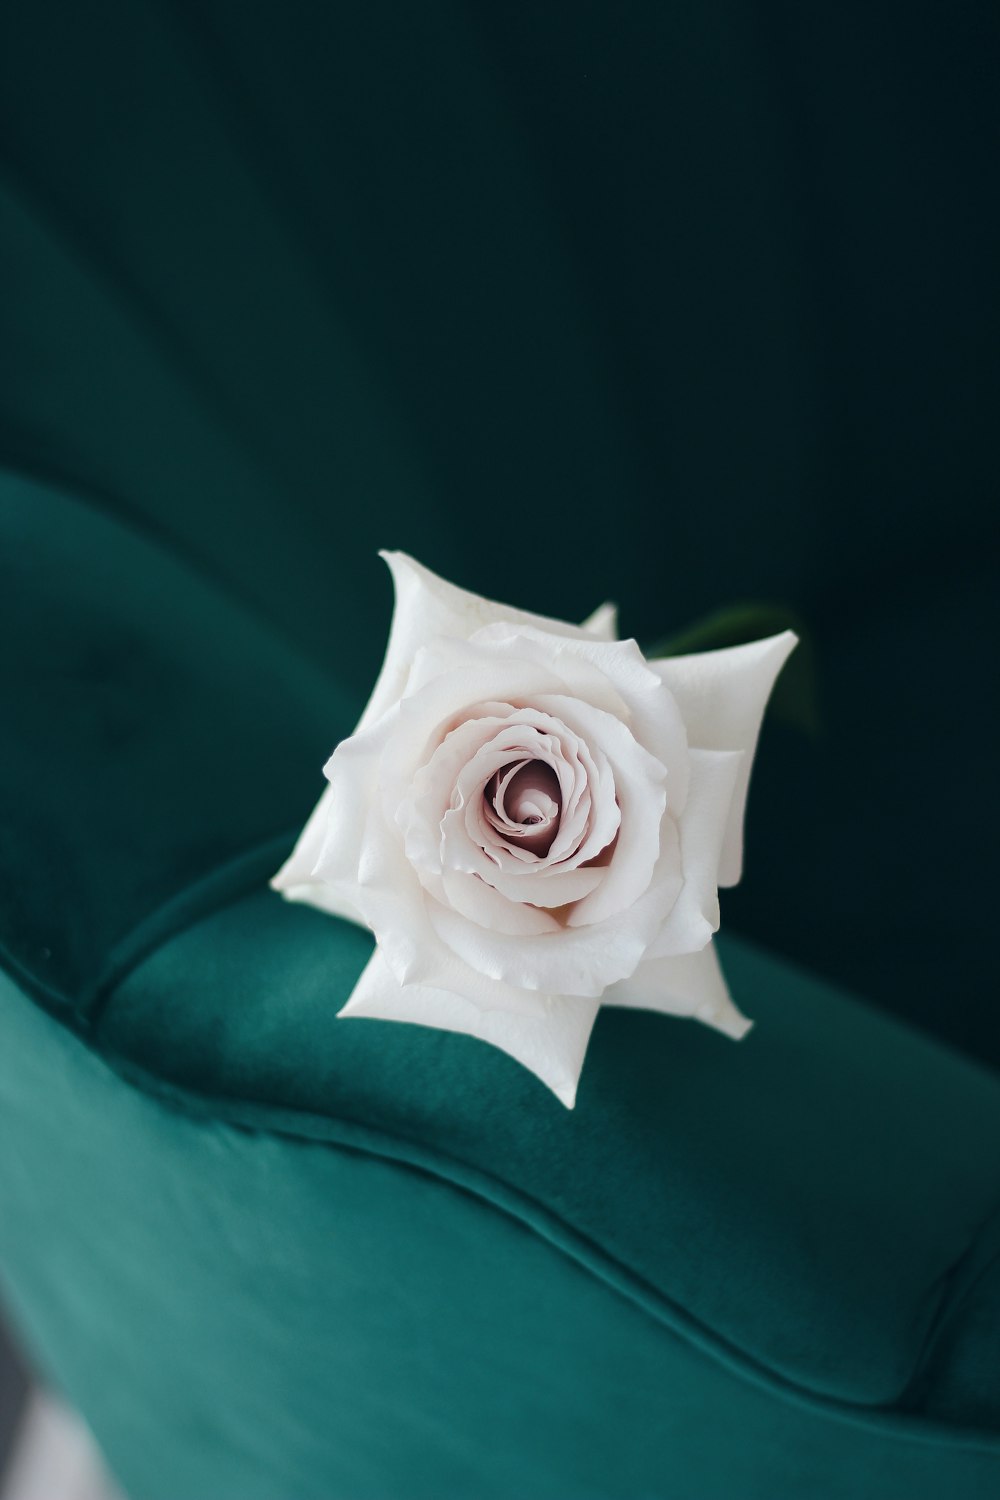 Rose blanche sur textile vert